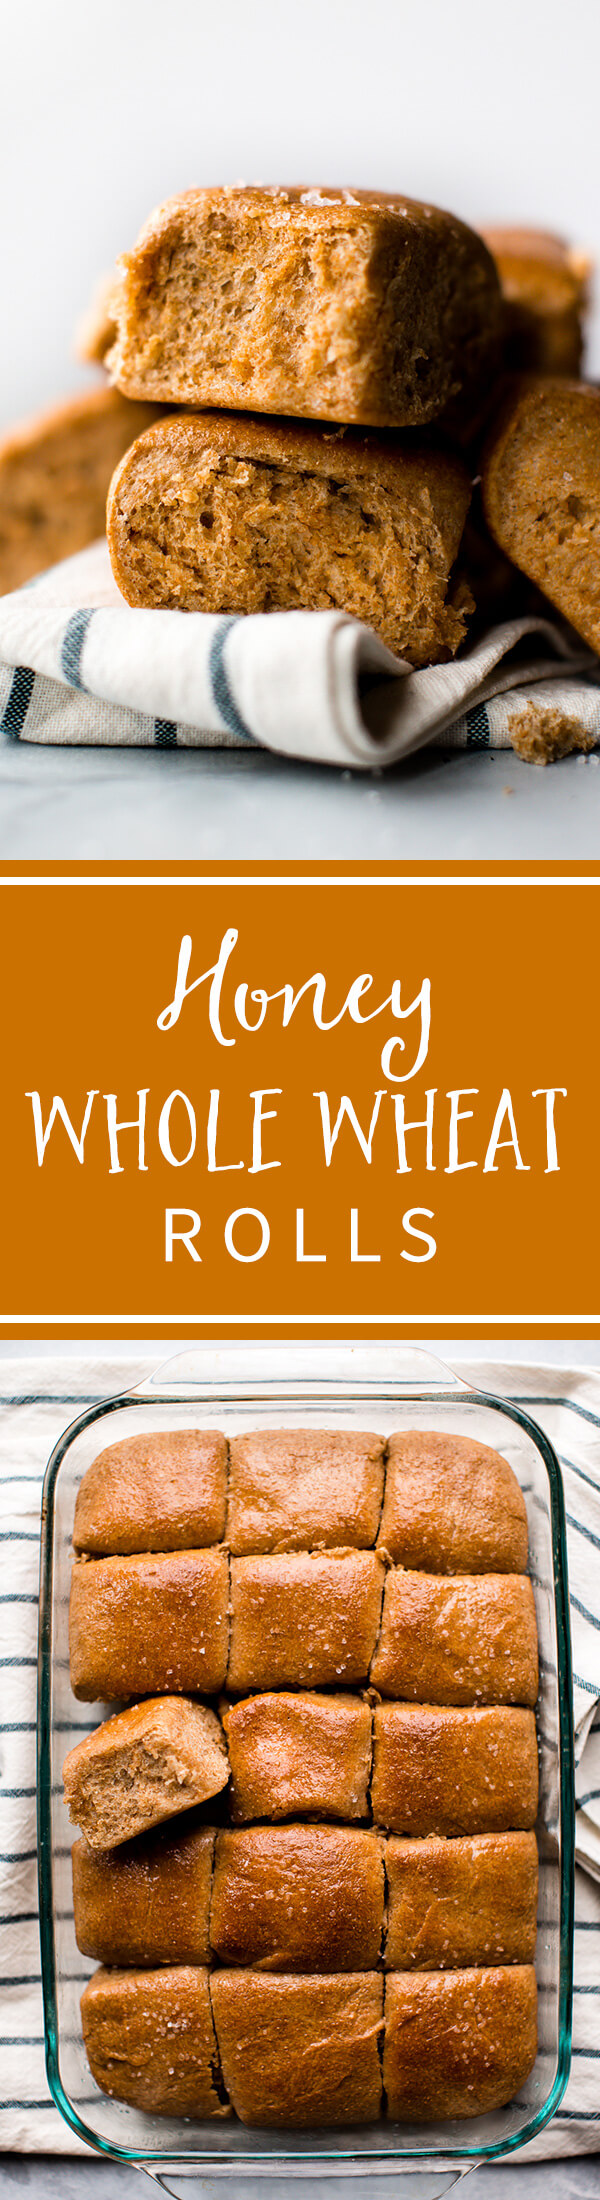 Petits pains au blé entier au miel doux, copieux et sucré! Recette de rouleaux de blé entier faits maison sur sallysbakingaddiction.com